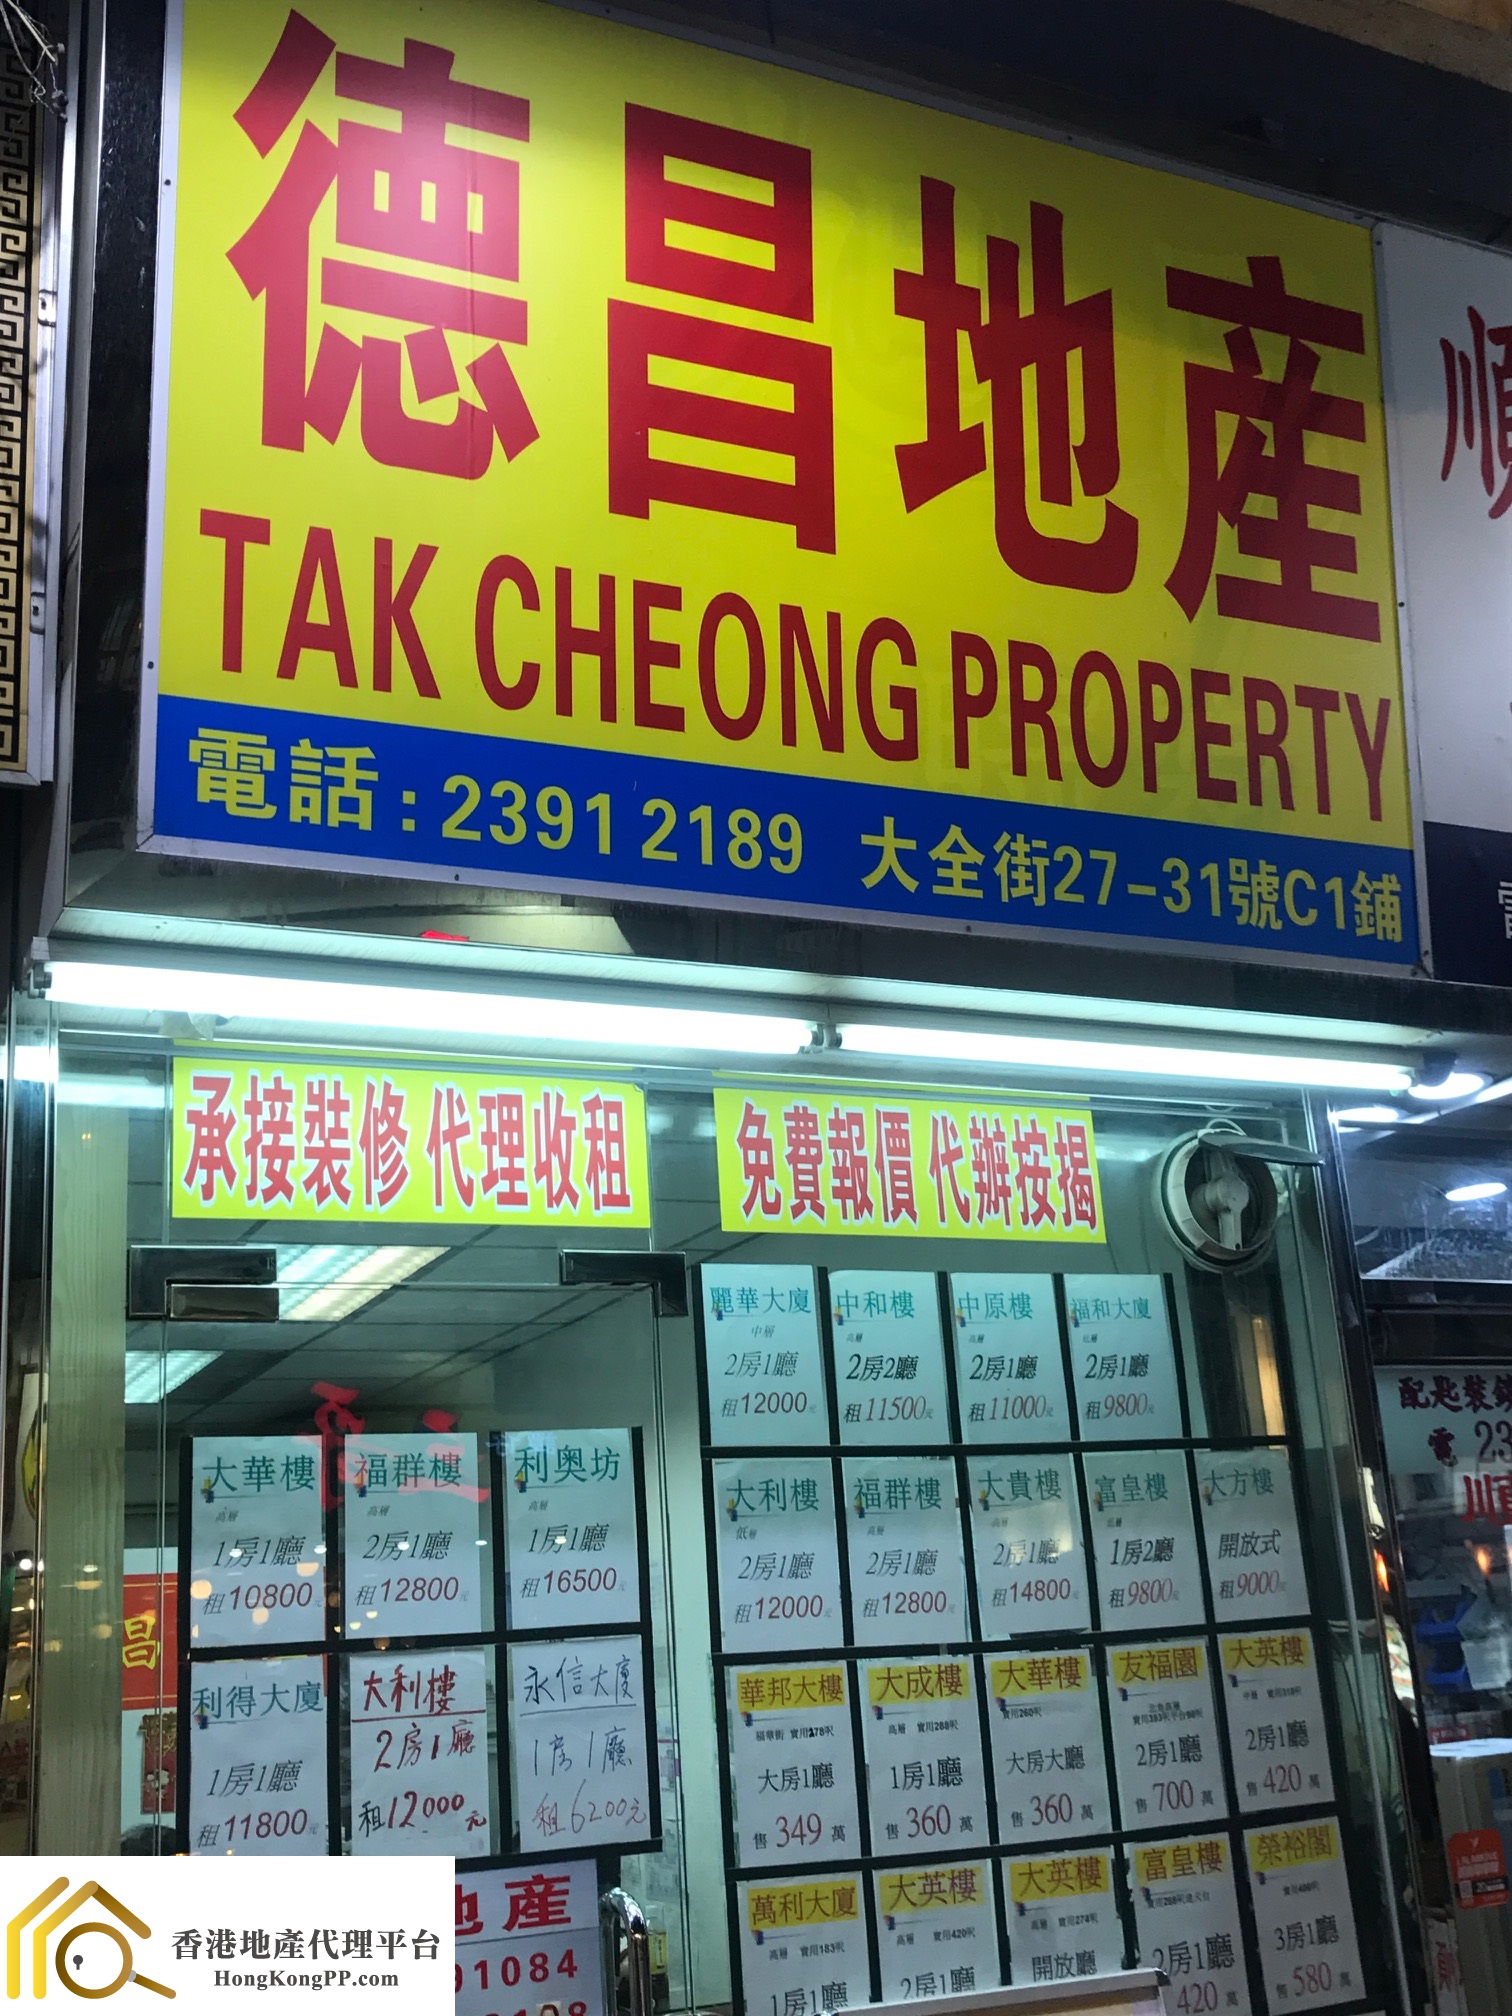 住宅地產代理: 德昌地產 Tak Cheong Property